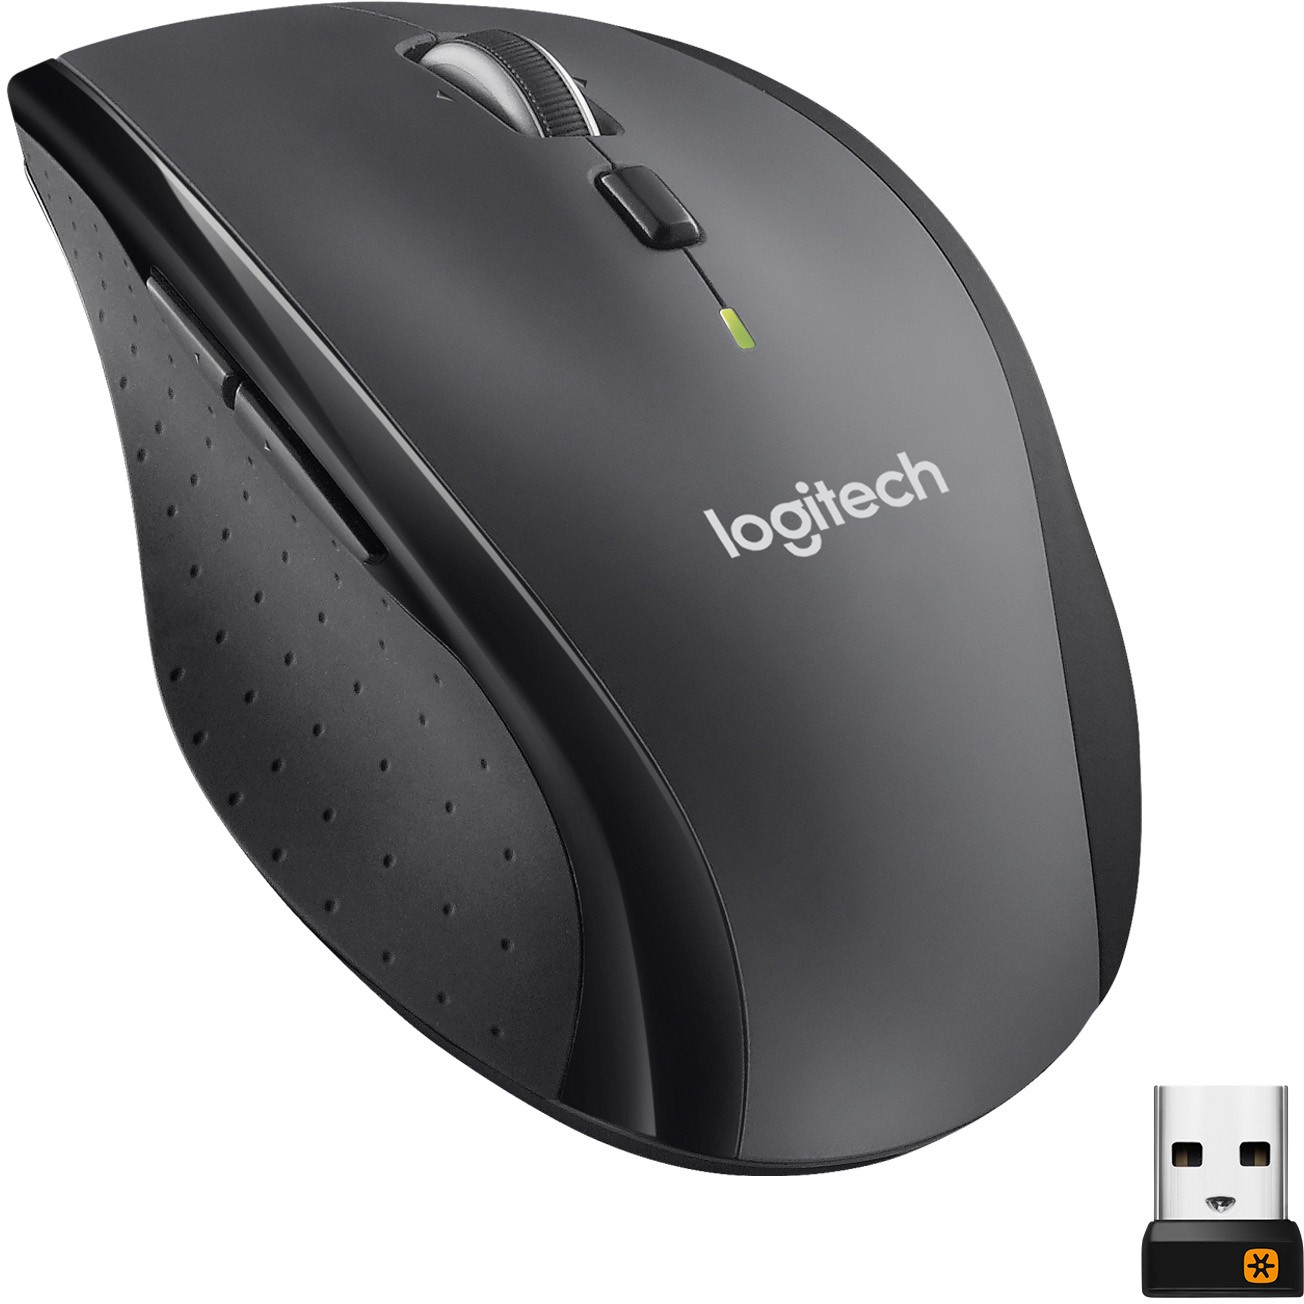 Logitech Marathon M705 mouse